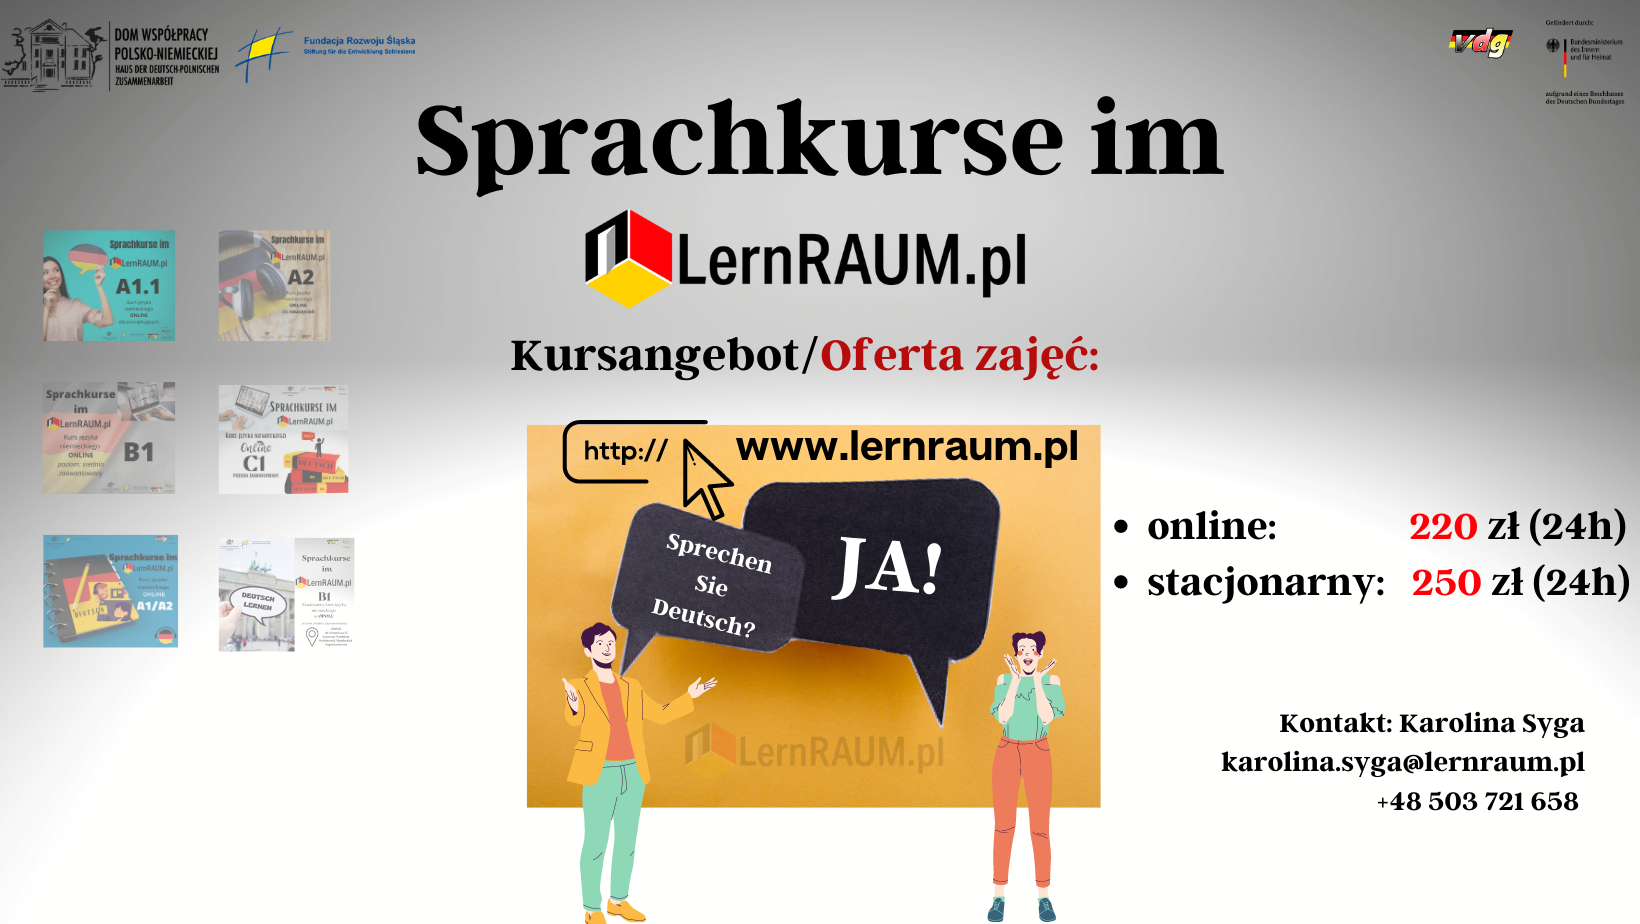 Kursy językowe w LernRAUM.pl!